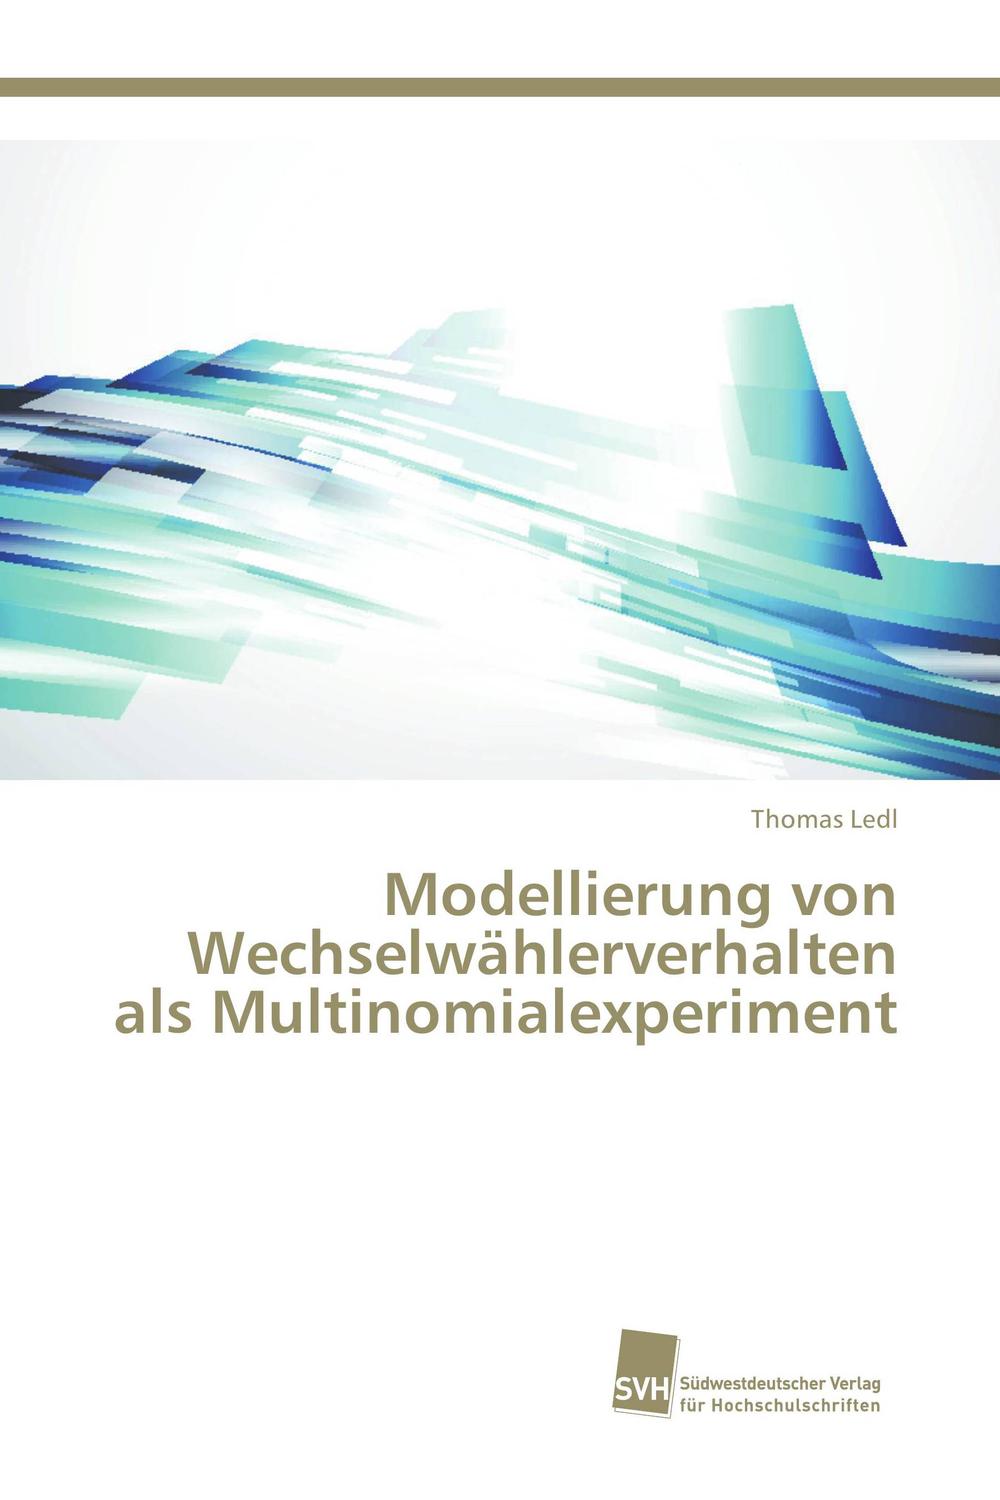 Modellierung von Wechselwählerverhalten als Multinomialexperiment - Thomas Ledl